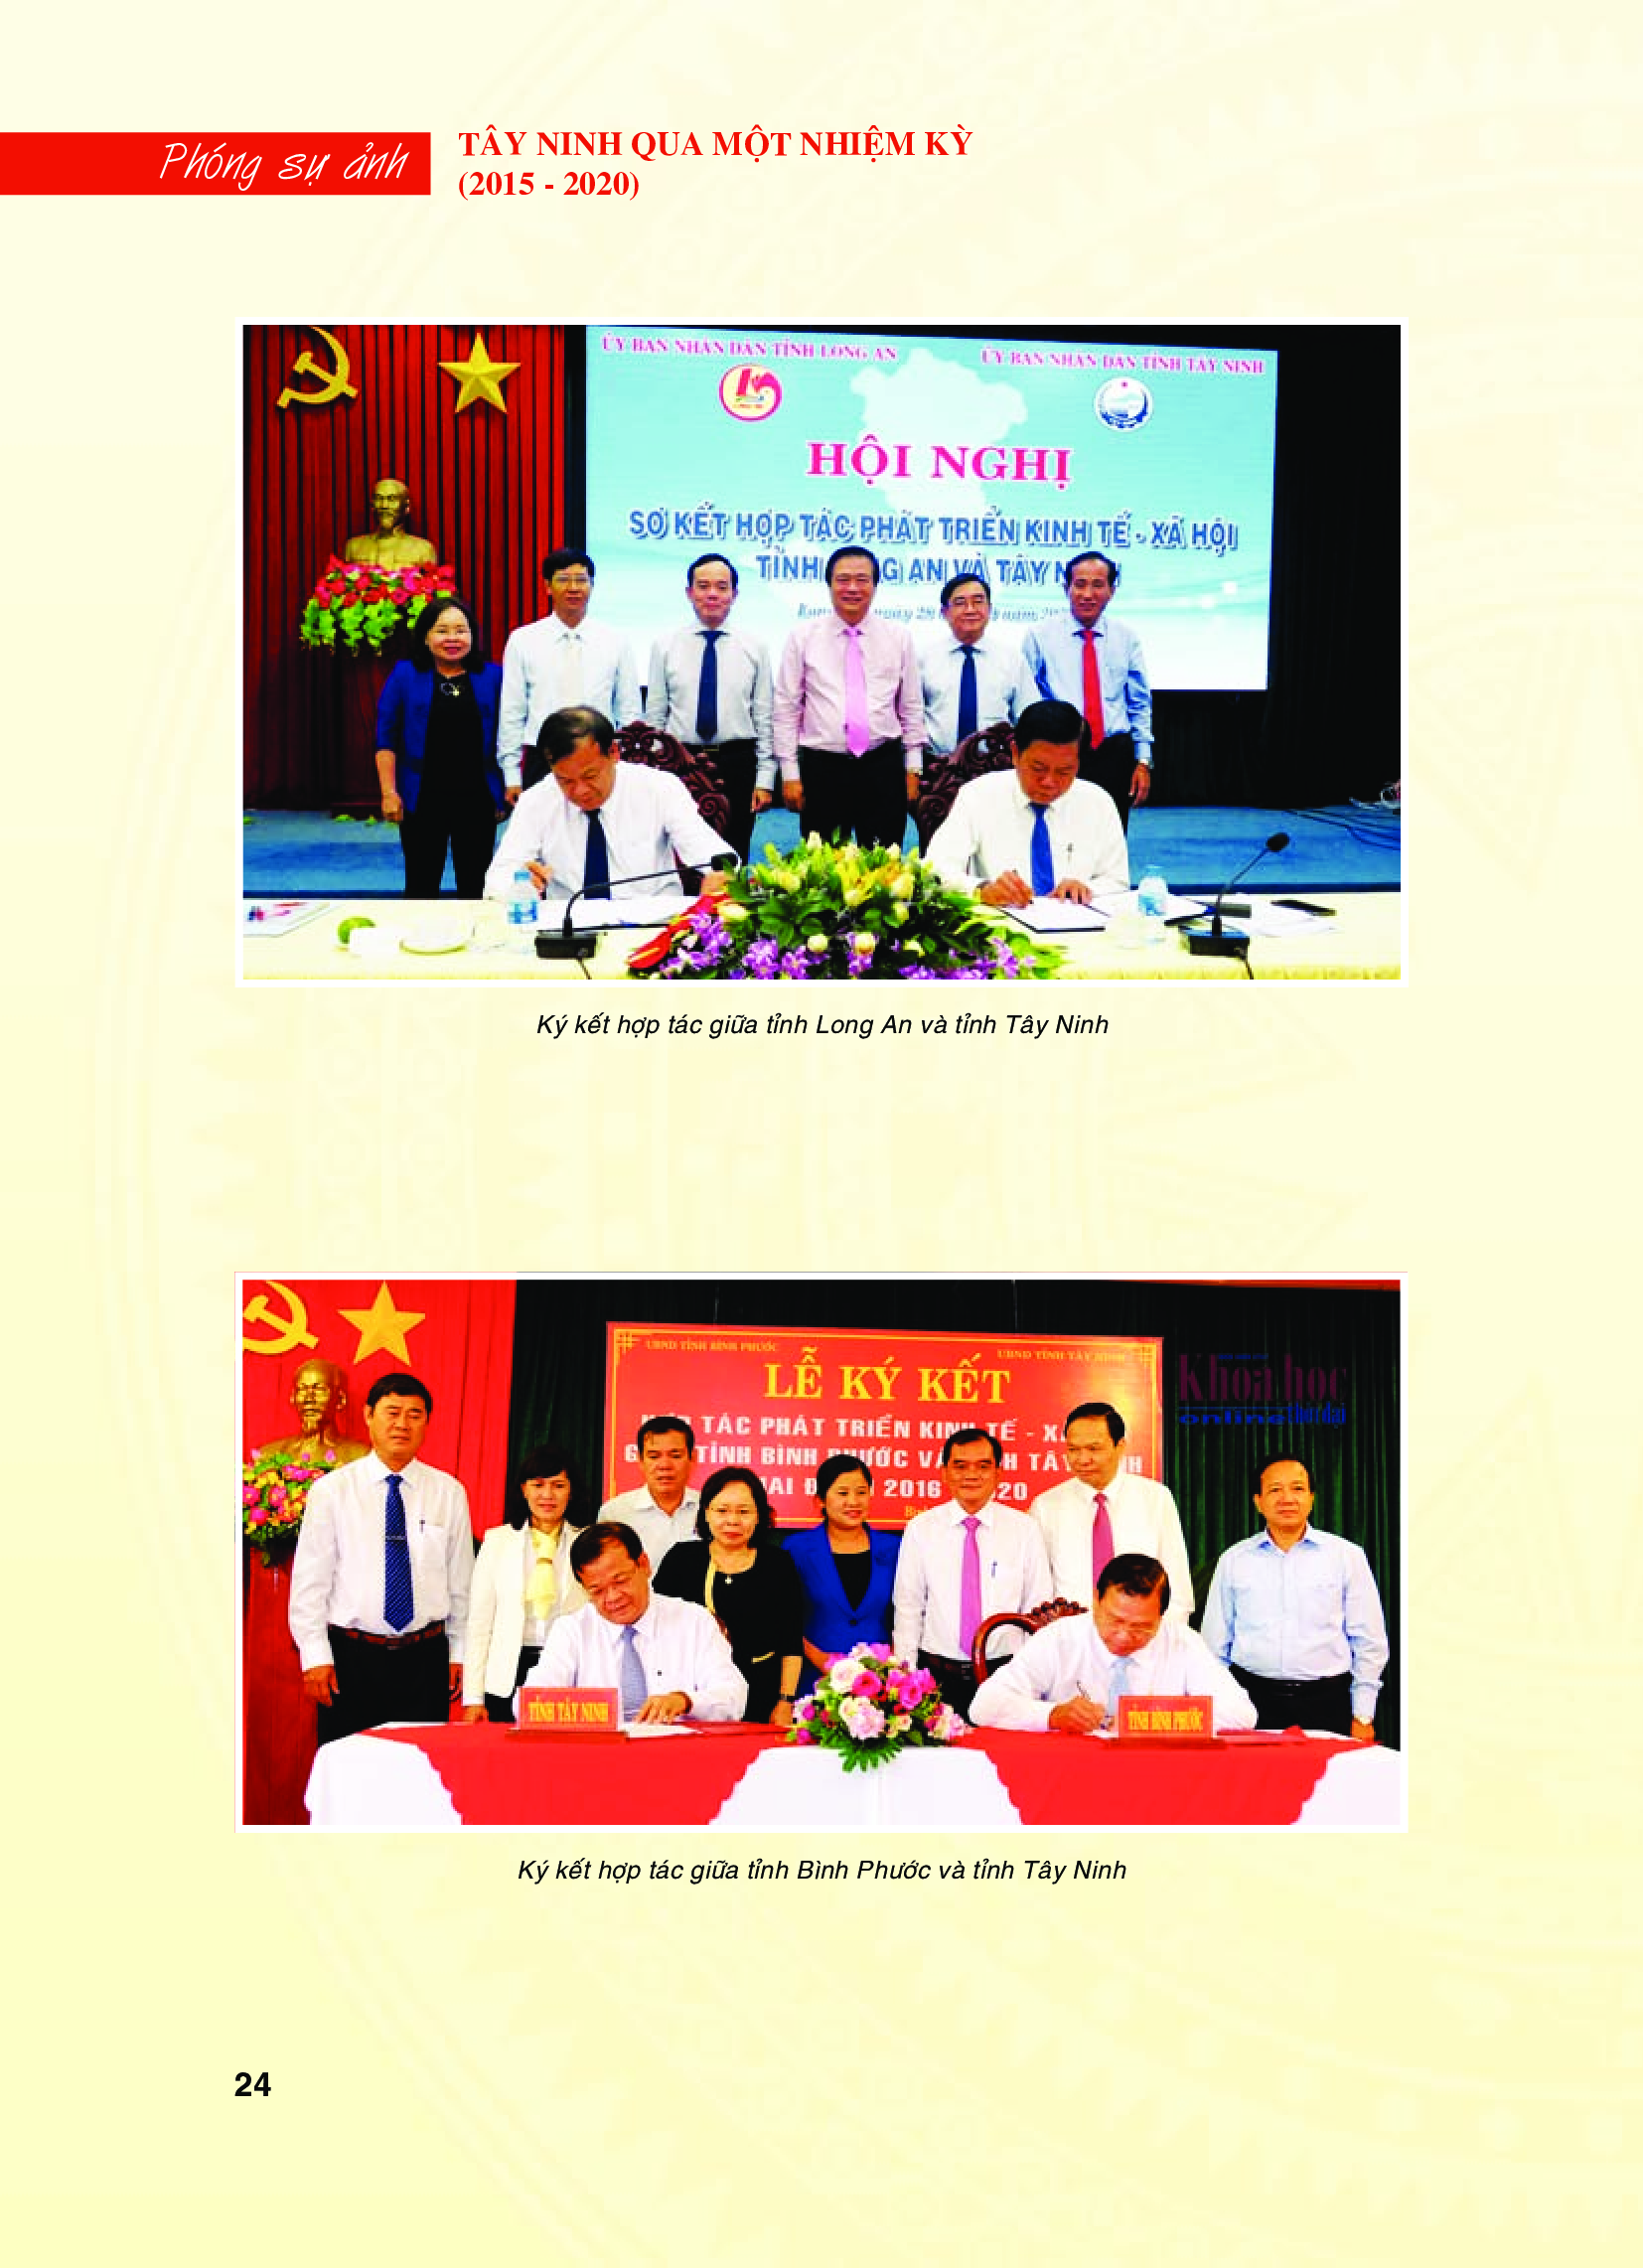 Tây Ninh qua một nhiệm kỳ (2015 - 2020) - Hoạt động ký kết hợp tác với các tỉnh, thành phố, tập đoàn kinh tế trong nước